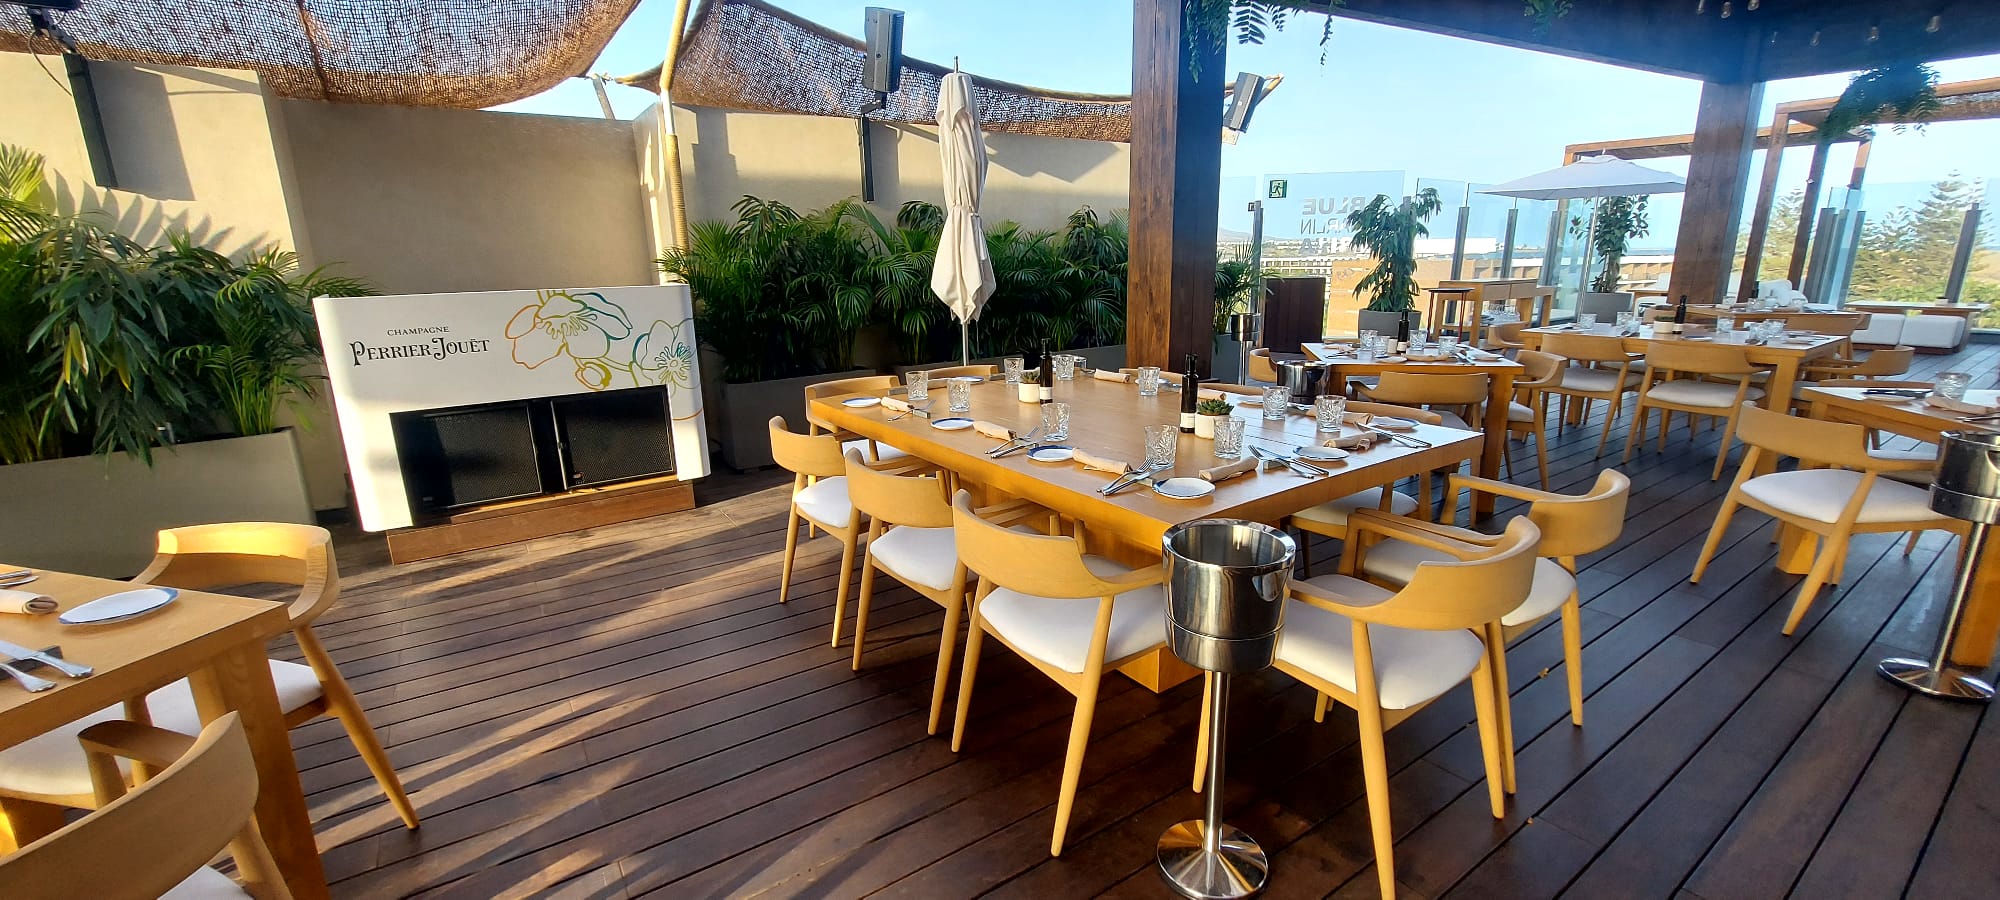 mesas y sillas de terraza restaurante Palo cortado suministradas por Sitamon